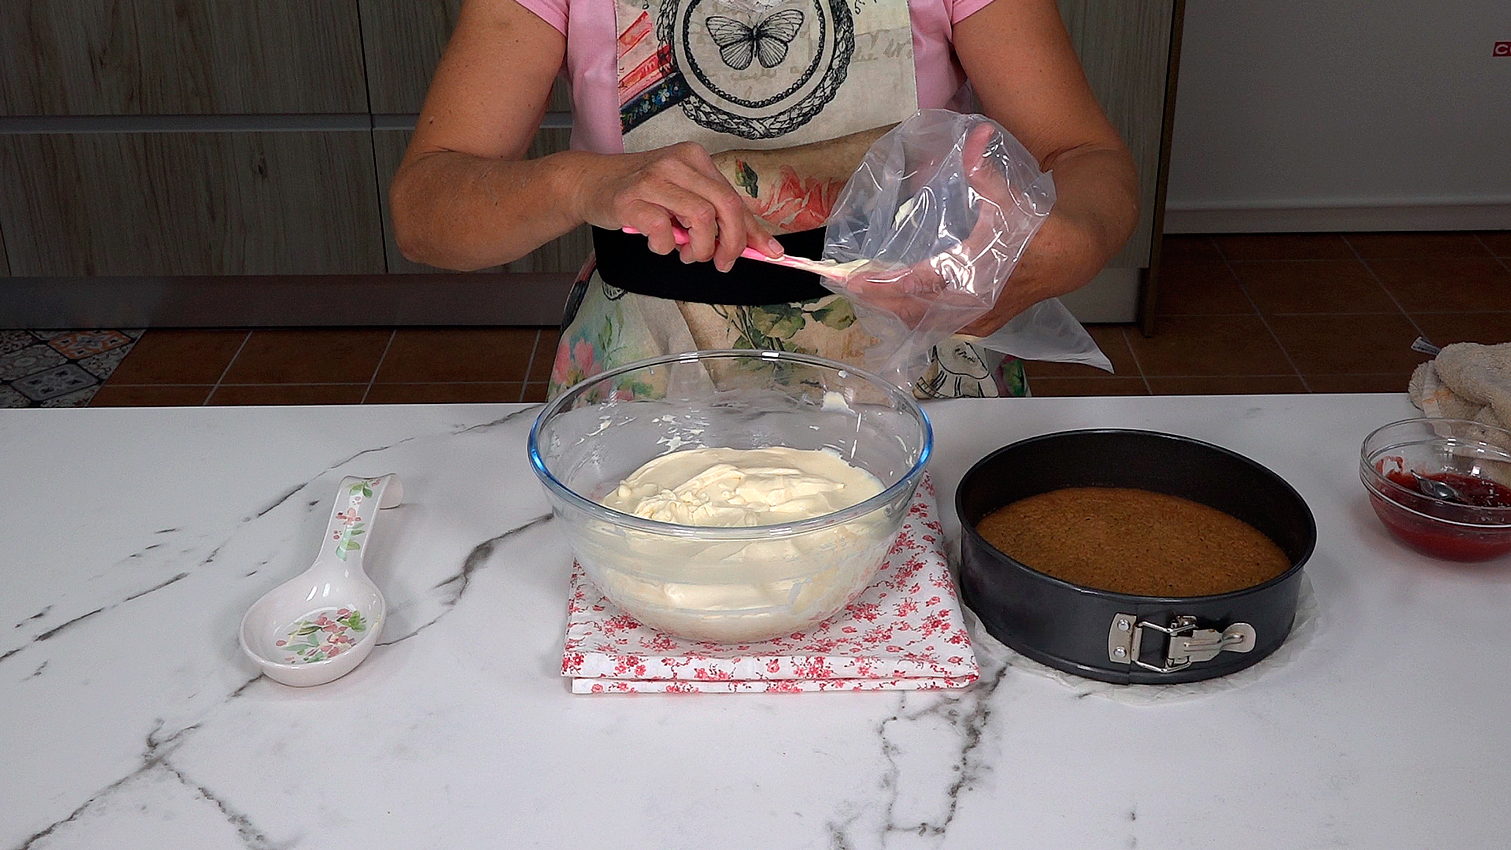 TARTA DE QUESO (CHEESECAKE) CON FRESAS. Una receta deliciosa, fácil y sin complicación - Loli Domínguez - Foto 8